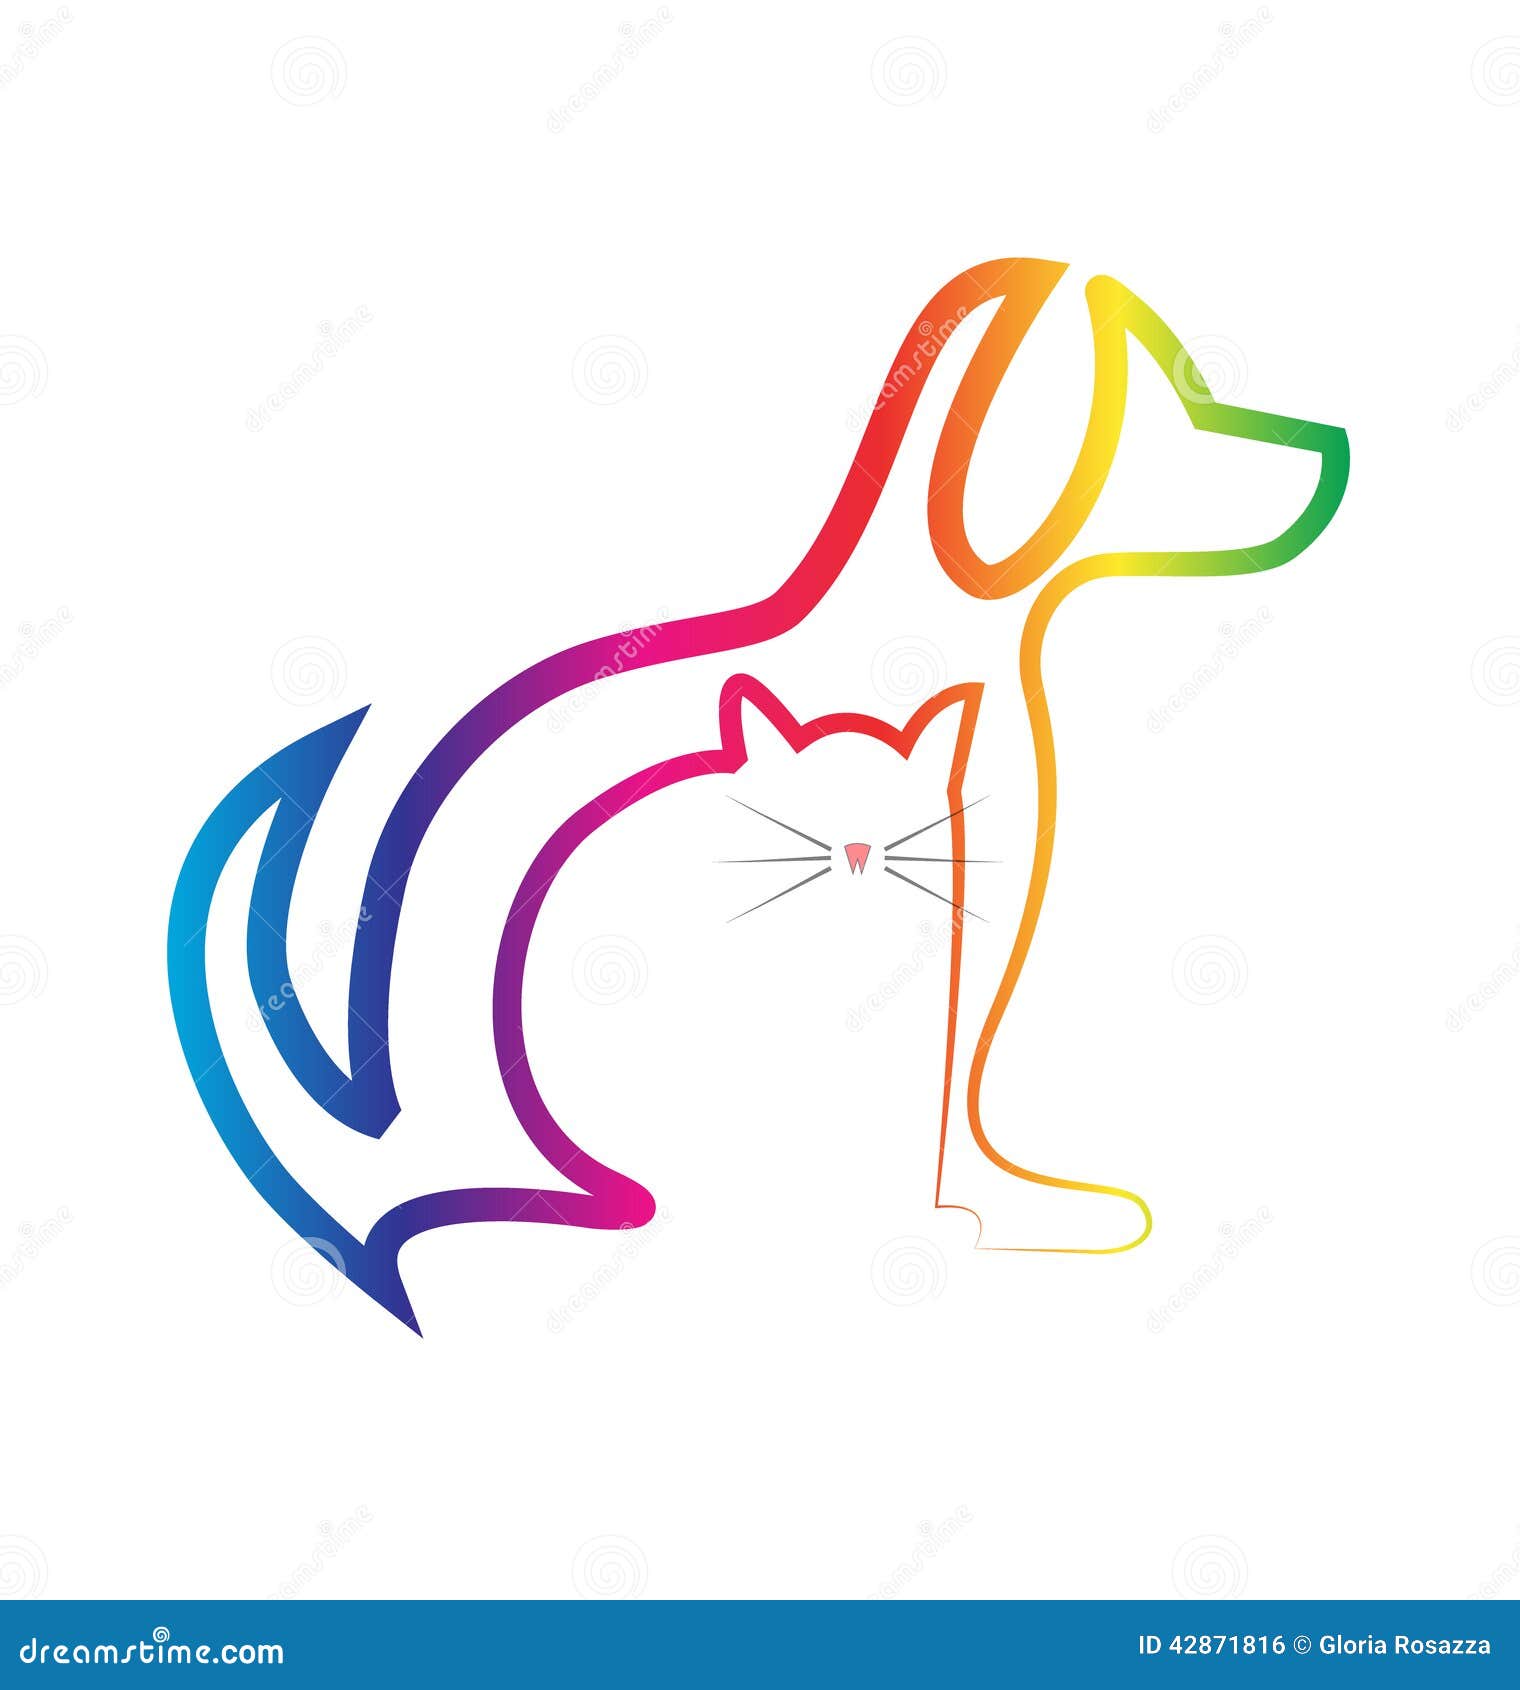 free veterinary logo clipart - photo #39